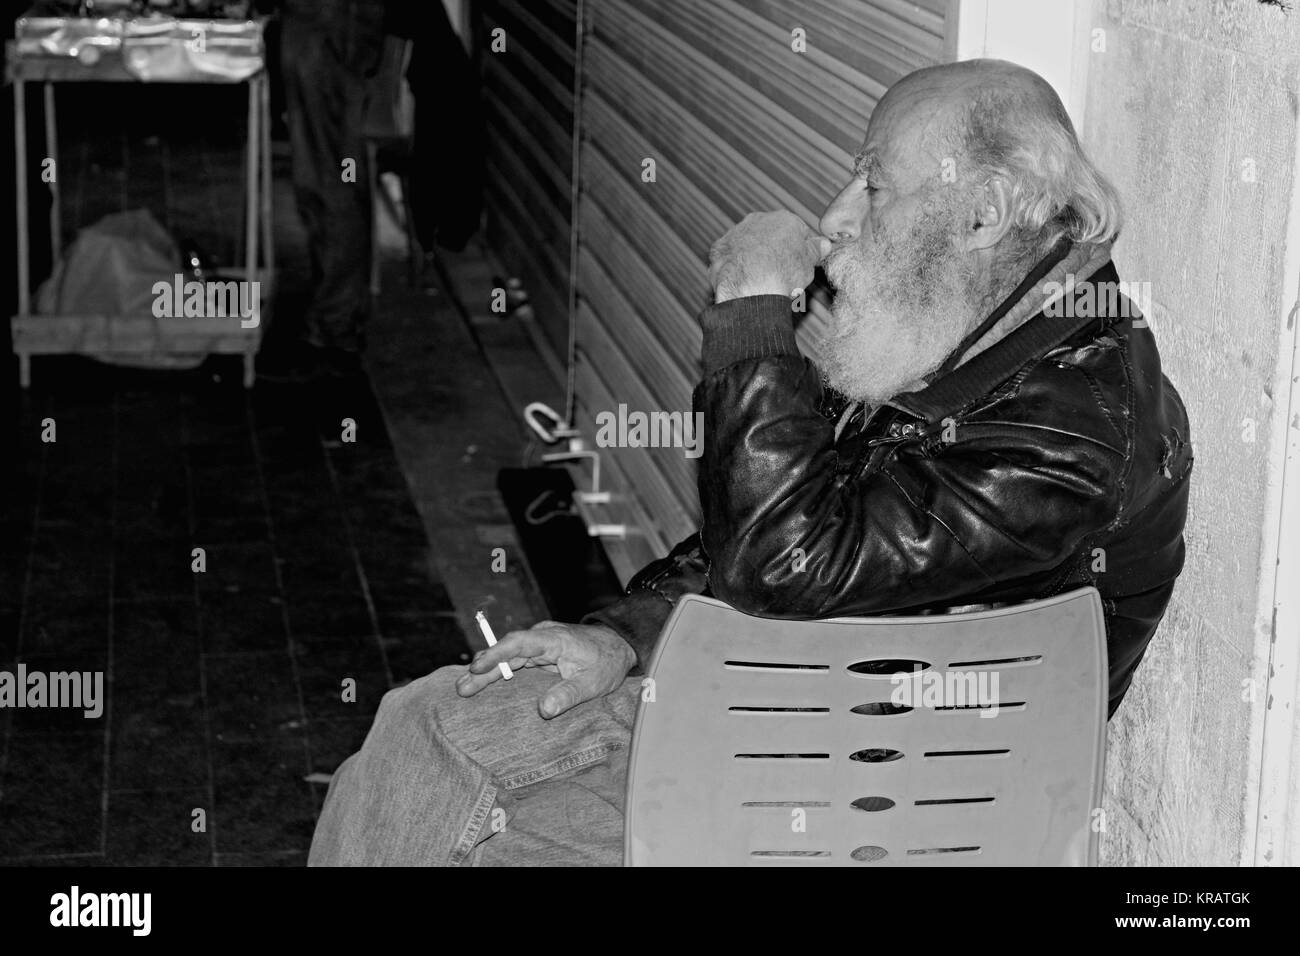 Déambulation dans le centre-ville arabe fatigués- 25/04/2017 - Jordanie / Amman Sguardi Aridi par Ali Raffaele Matar tourné en avril 2017 - triste vieil homme assis dans Al Balad Banque D'Images